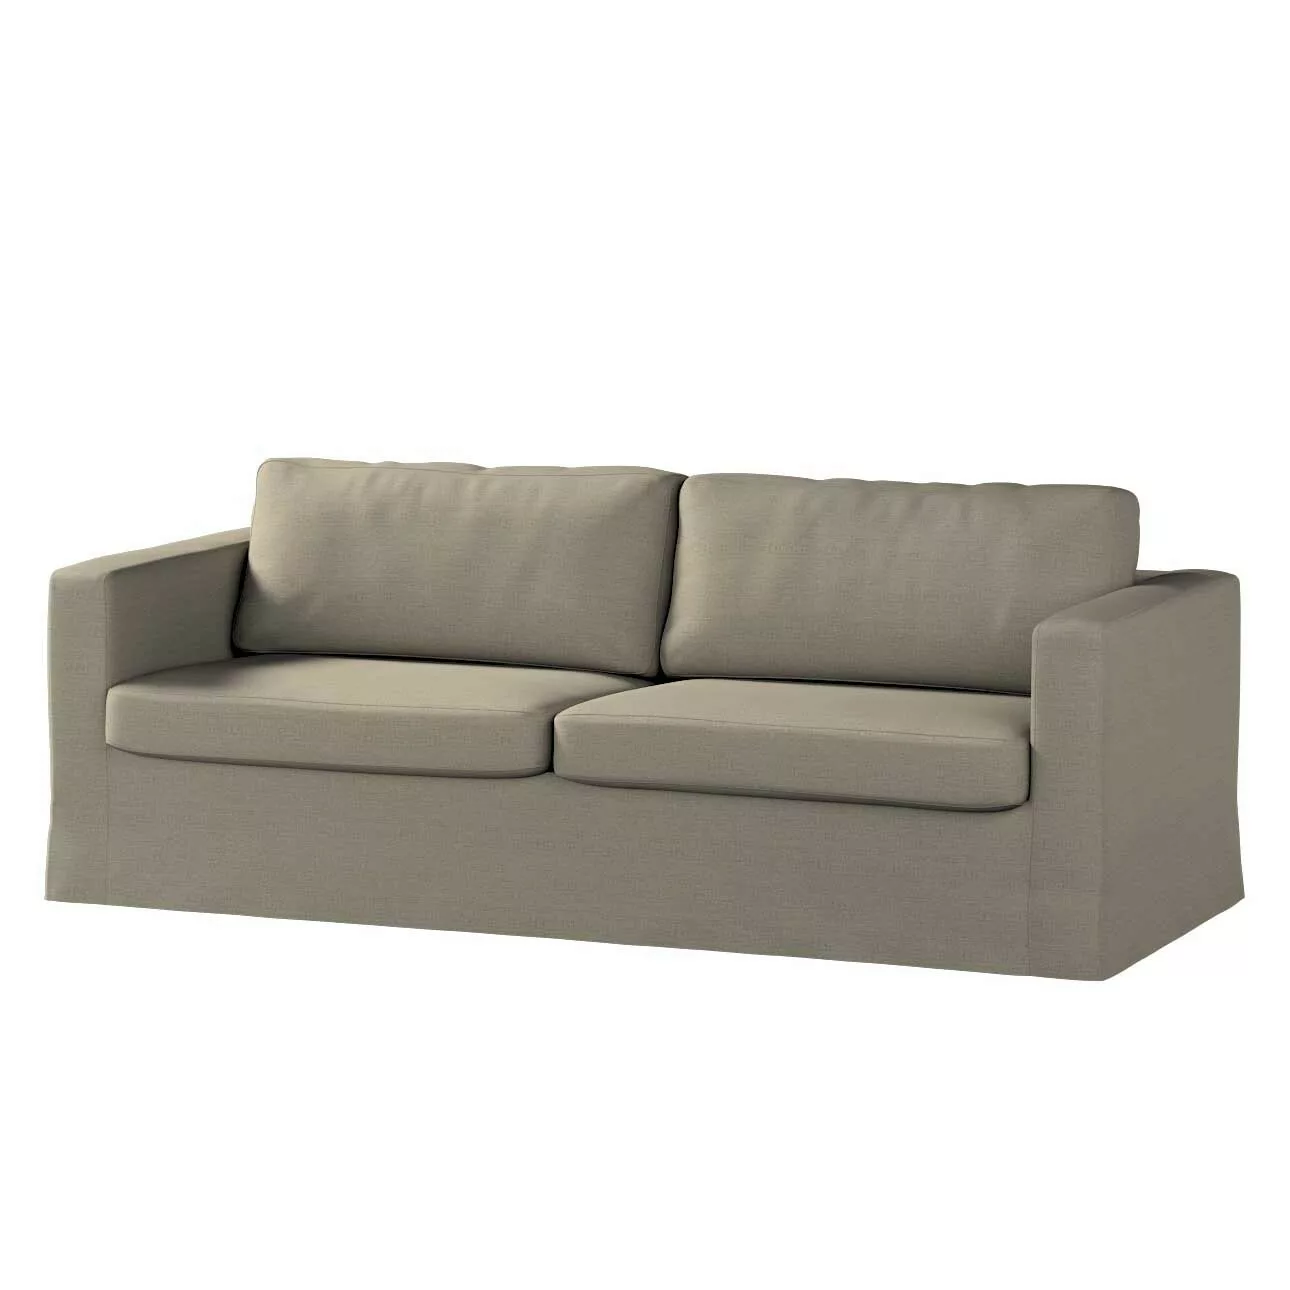 Bezug für Karlstad 3-Sitzer Sofa nicht ausklappbar, lang, beige-grau, Bezug günstig online kaufen